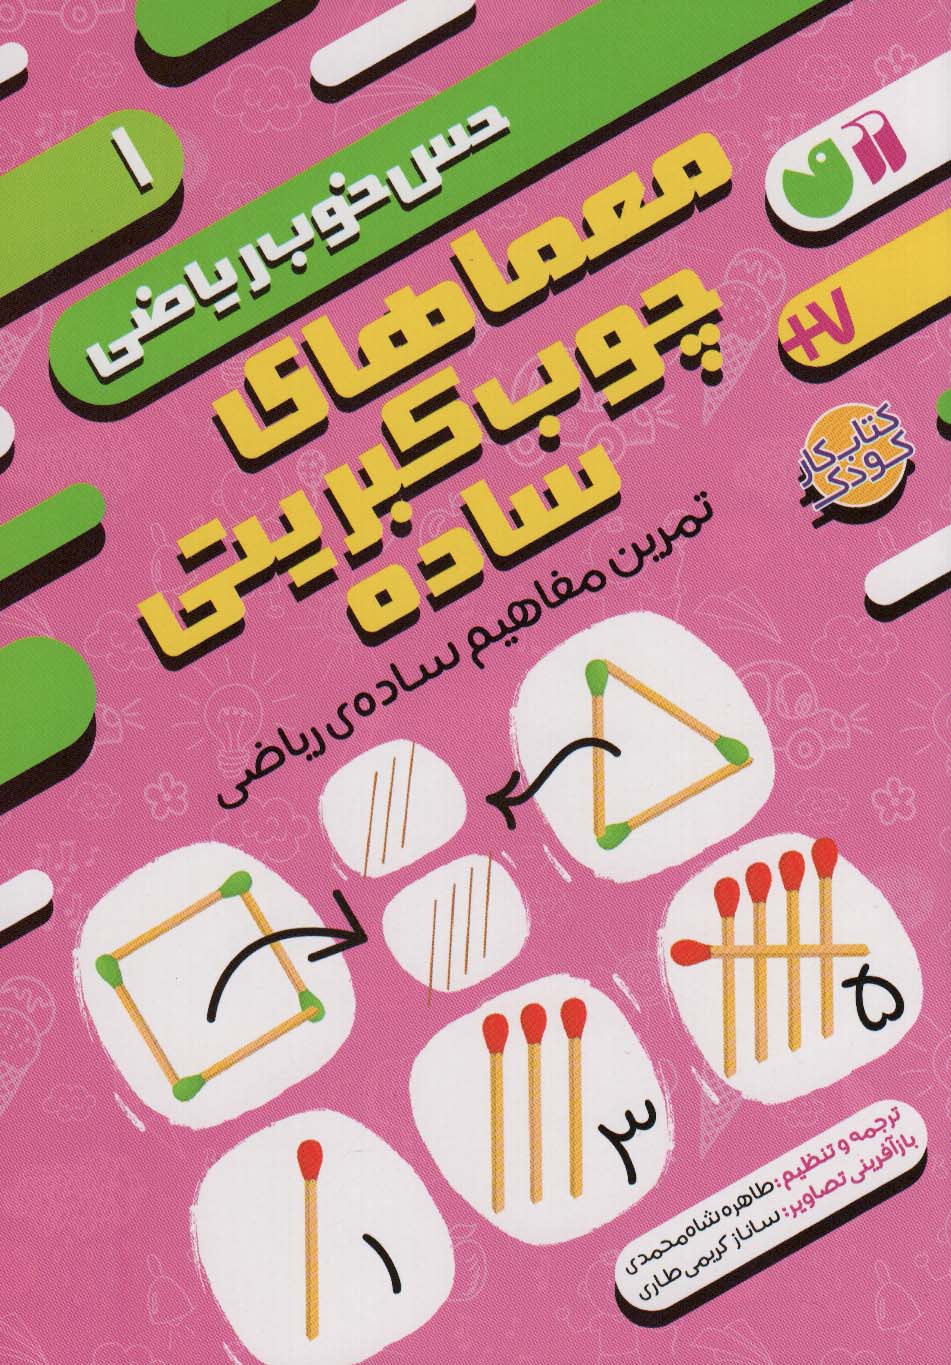  کتاب معماهای چوب کبریتی ساده:تمرین مفاهیم ساده ی ریاضی